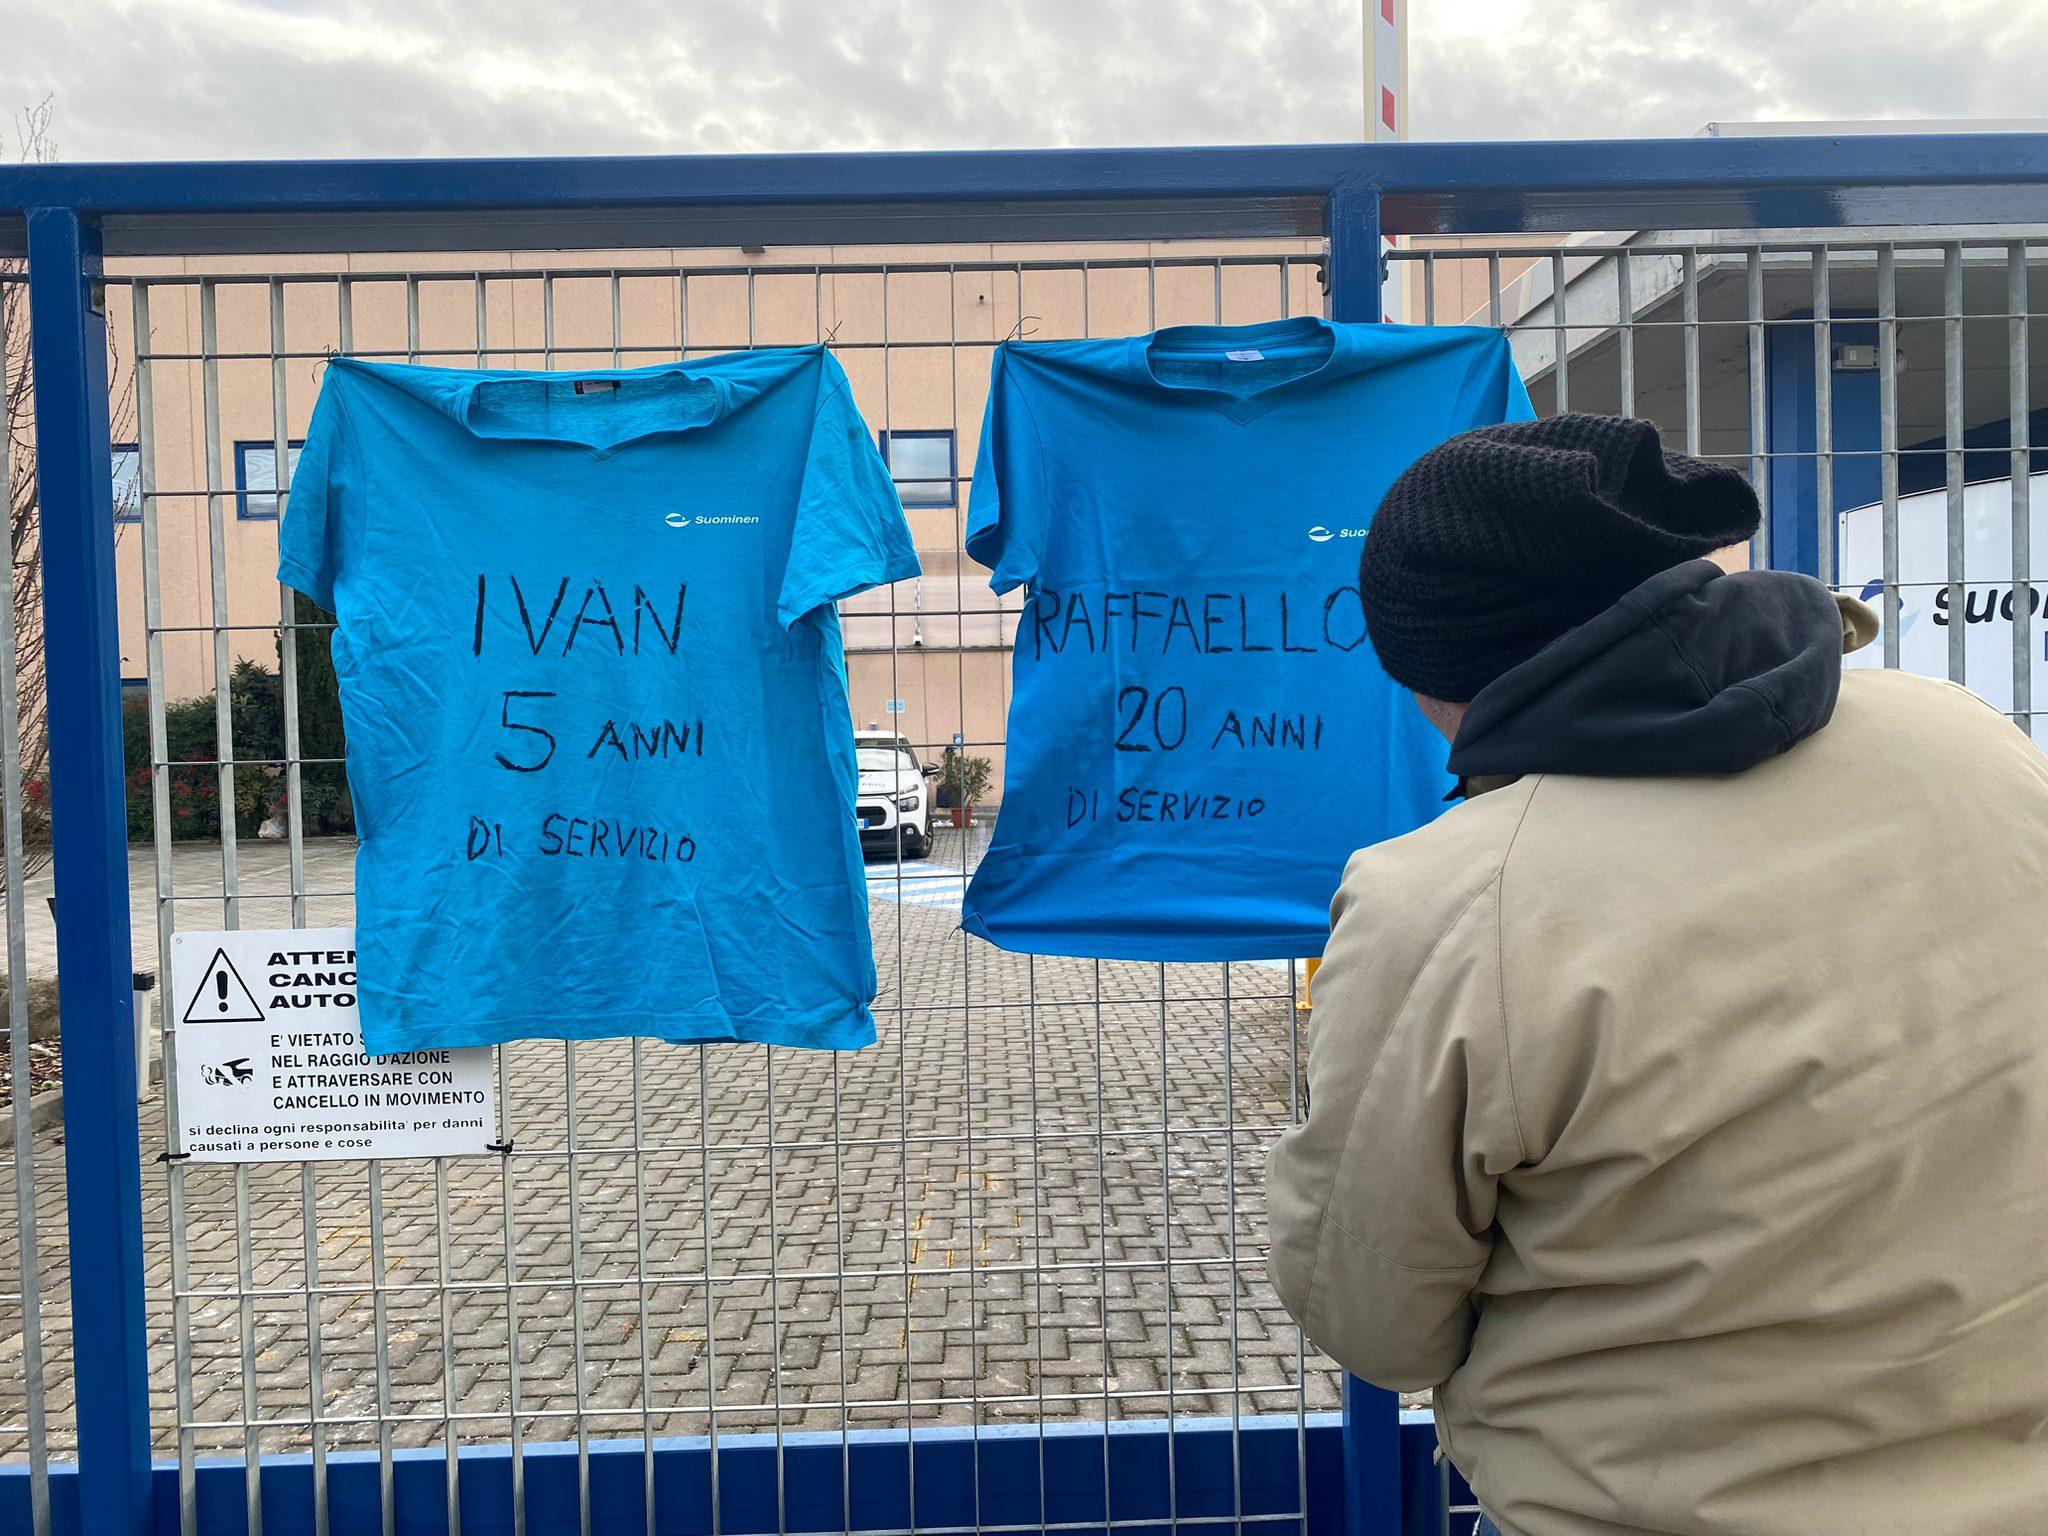 Mozzate, magliette con gli anni di lavoro appese al cancello: continua il presidio dei lavoratori Suominen